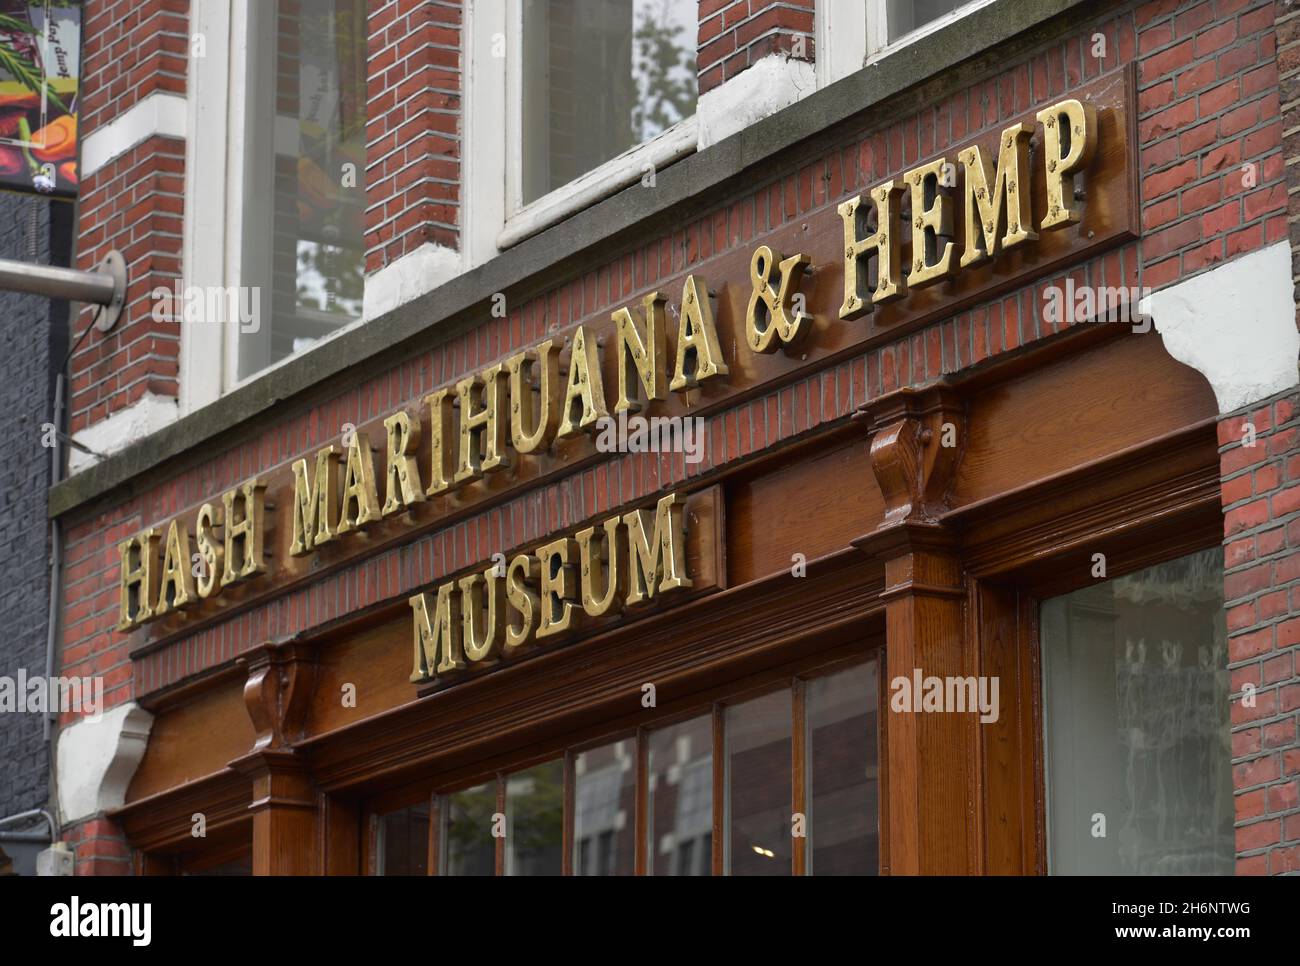 Hash Marijuana &amp; Hemp Museum, Oudezijds Achterburgwal, Amsterdam, Netherlands Stock Photo